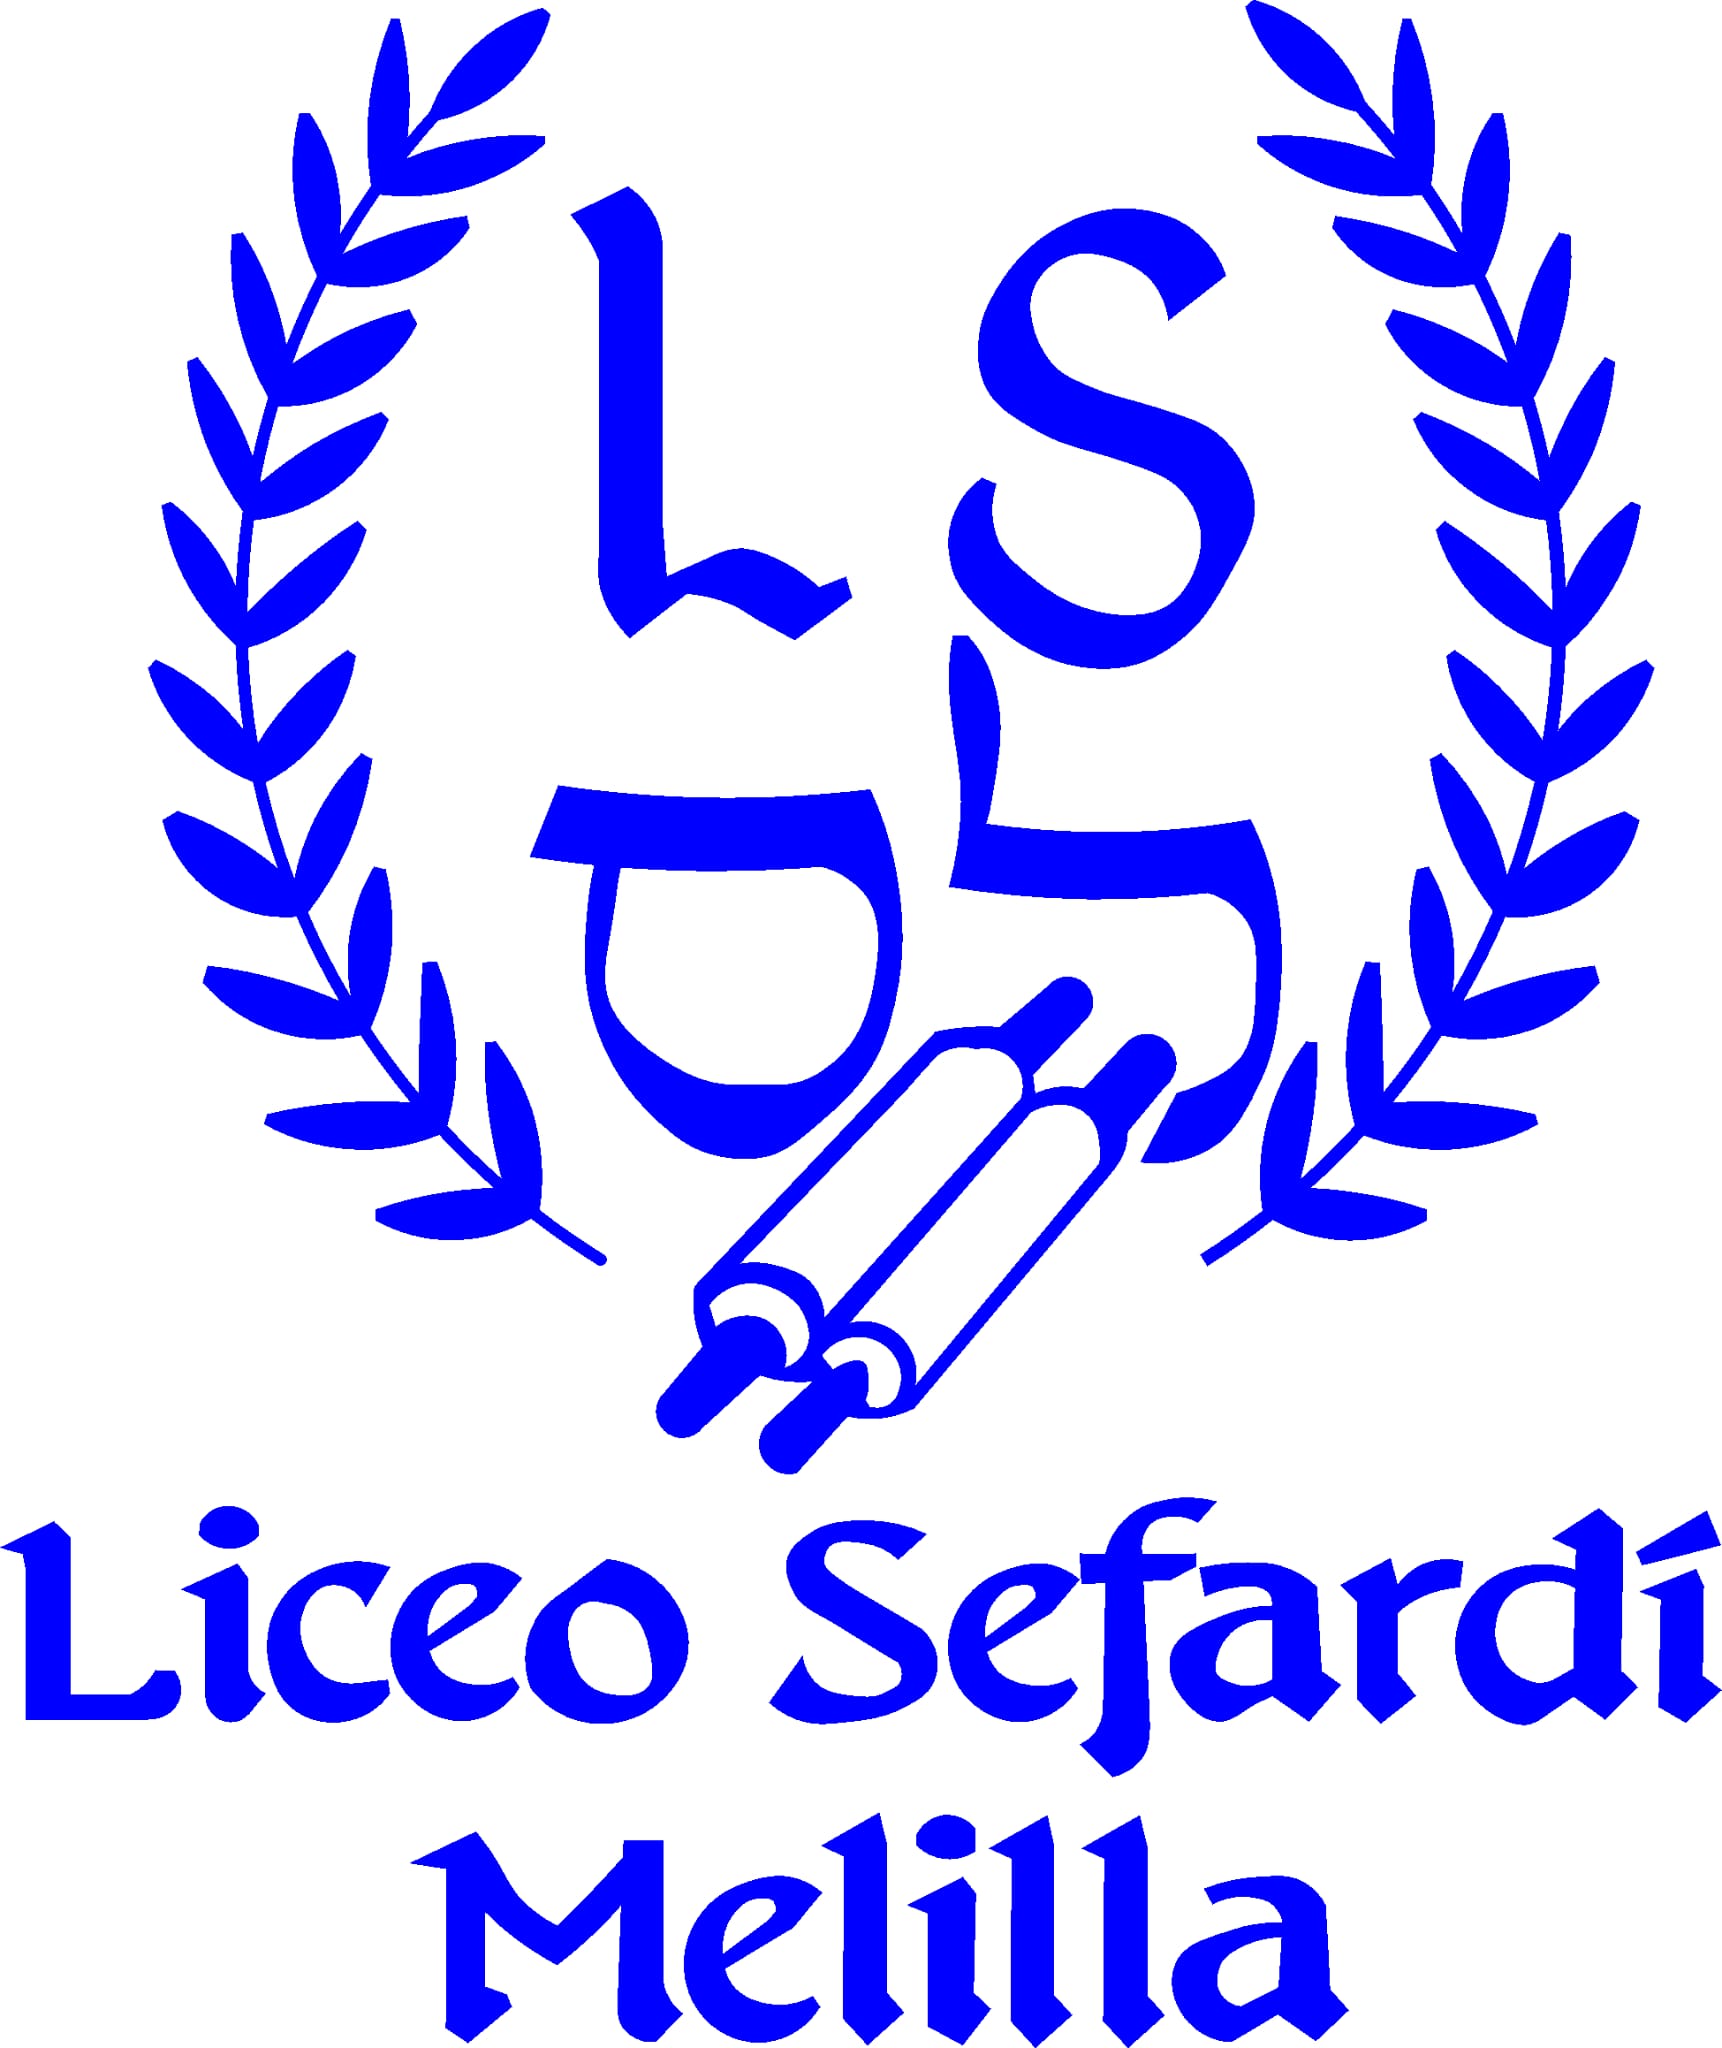 Logo de Liceo Sefardí David Melul - Melilla